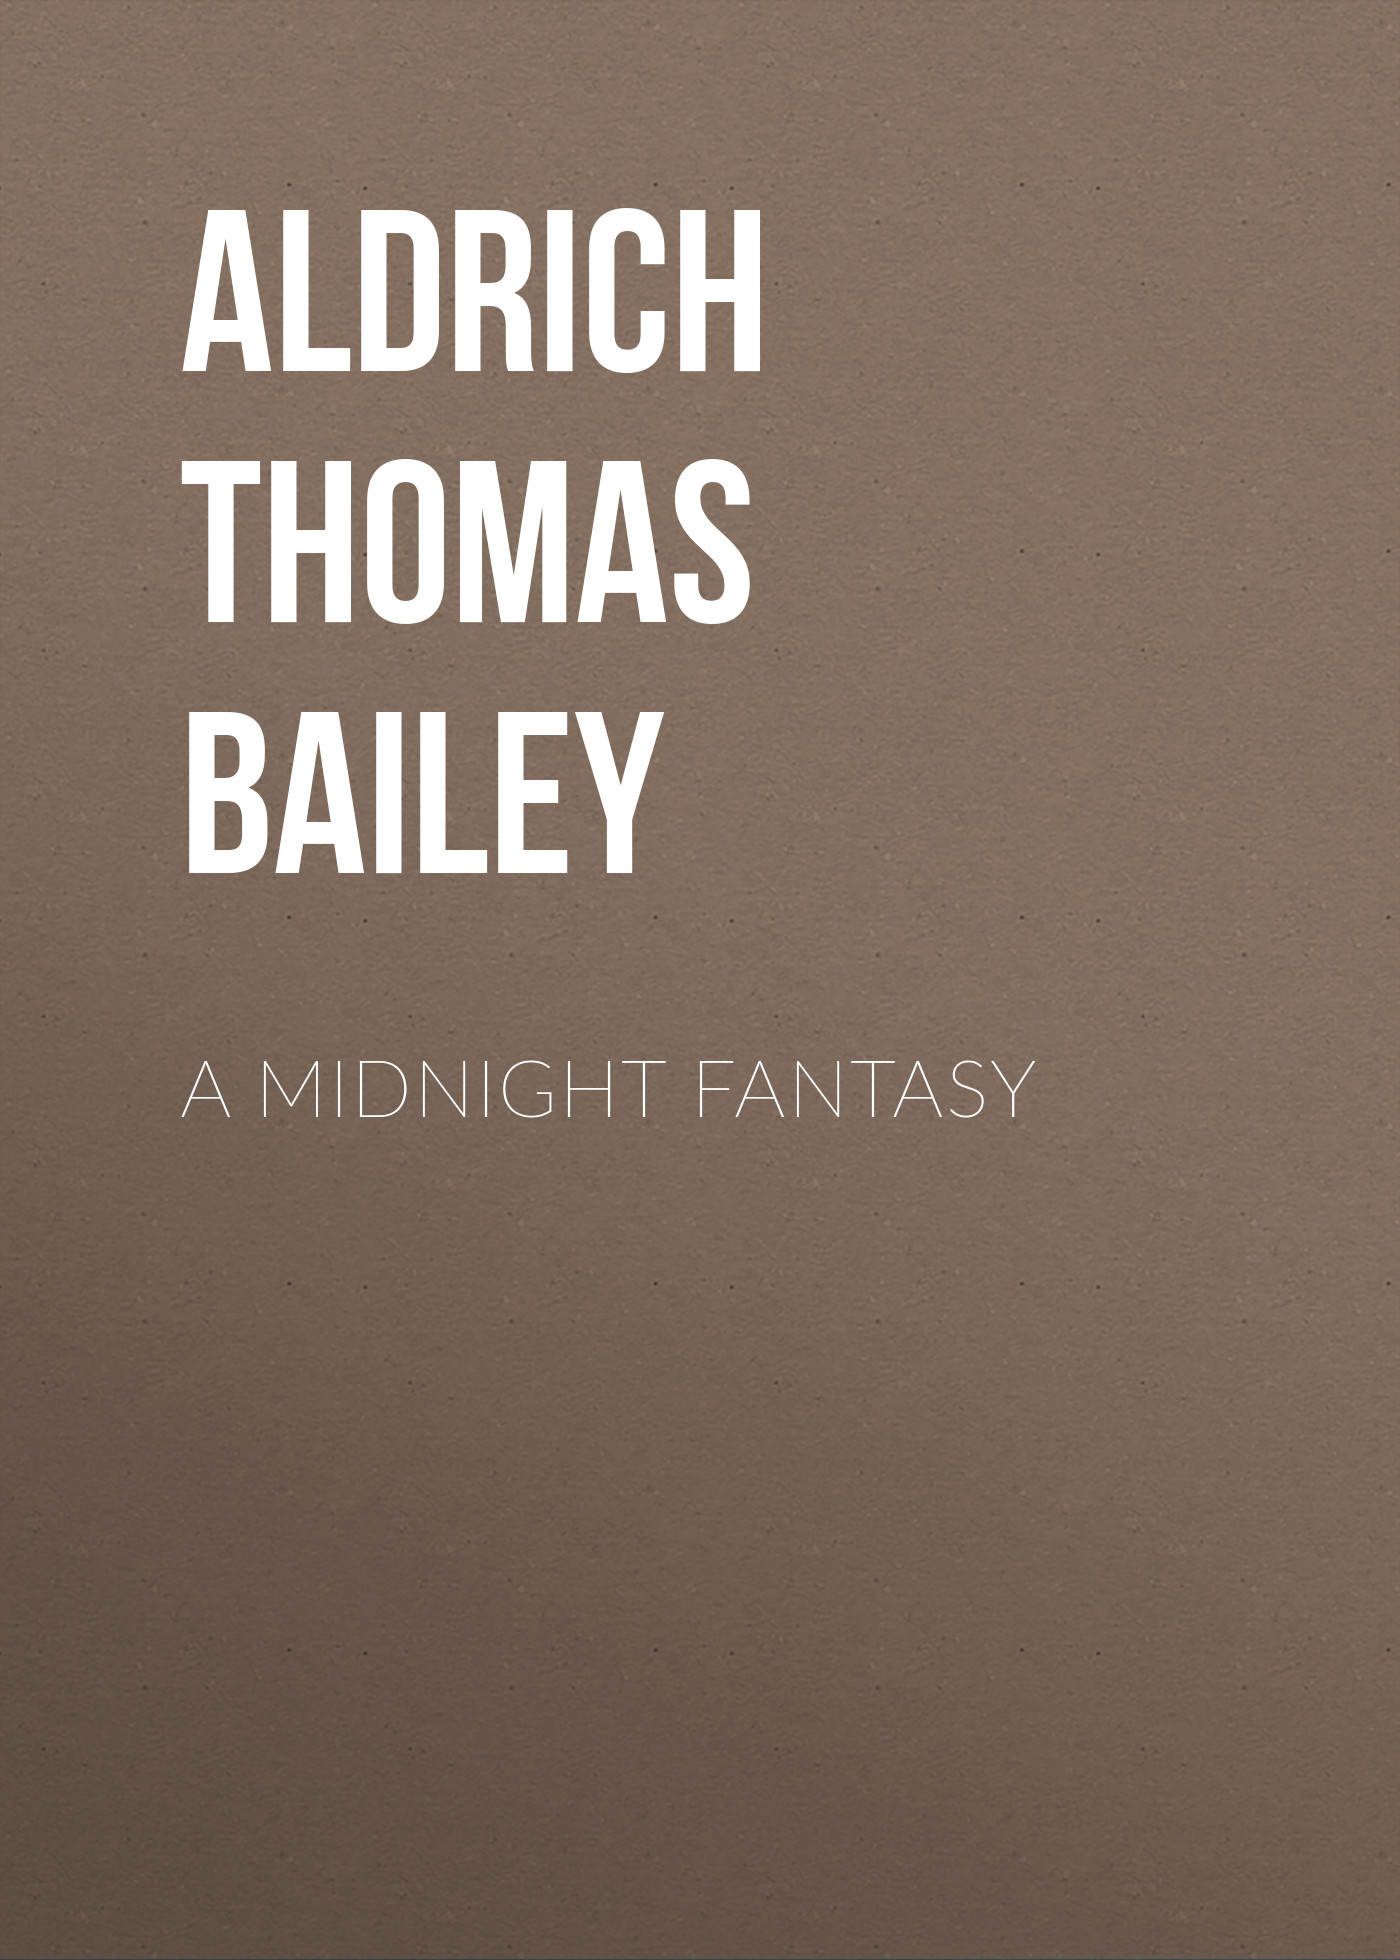 Книга A Midnight Fantasy из серии , созданная Thomas Aldrich, может относится к жанру Зарубежная классика, Литература 19 века, Зарубежная старинная литература. Стоимость электронной книги A Midnight Fantasy с идентификатором 36366966 составляет 0 руб.